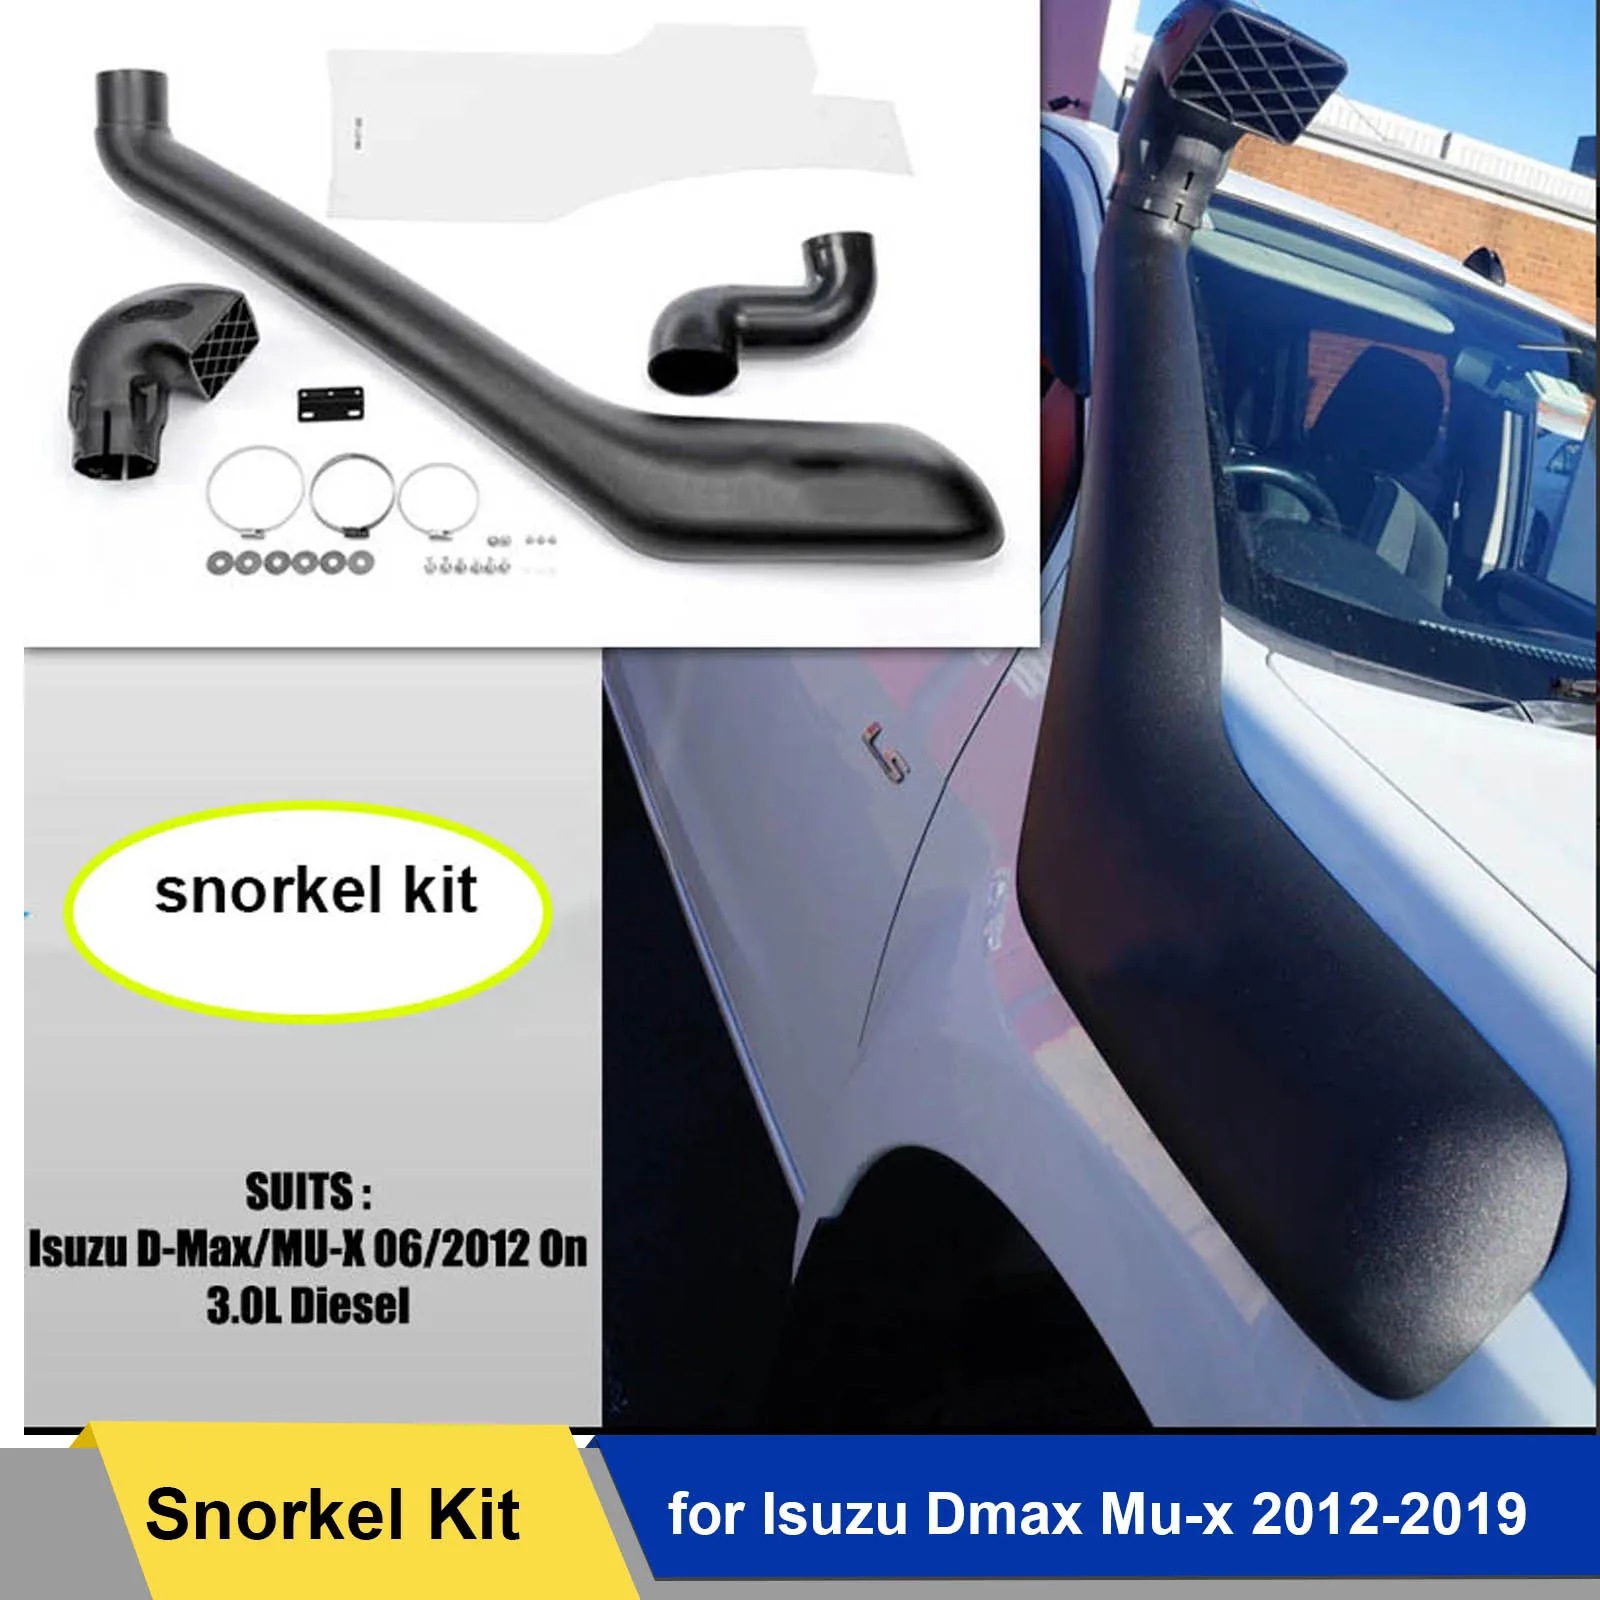 

4x4 Off Road Vehicle Air Intake Snorkel Kit For Isuzu Dmax Mu-x 2012 -2019 4JJ1-TC 3.0Litre-I4 Diesel